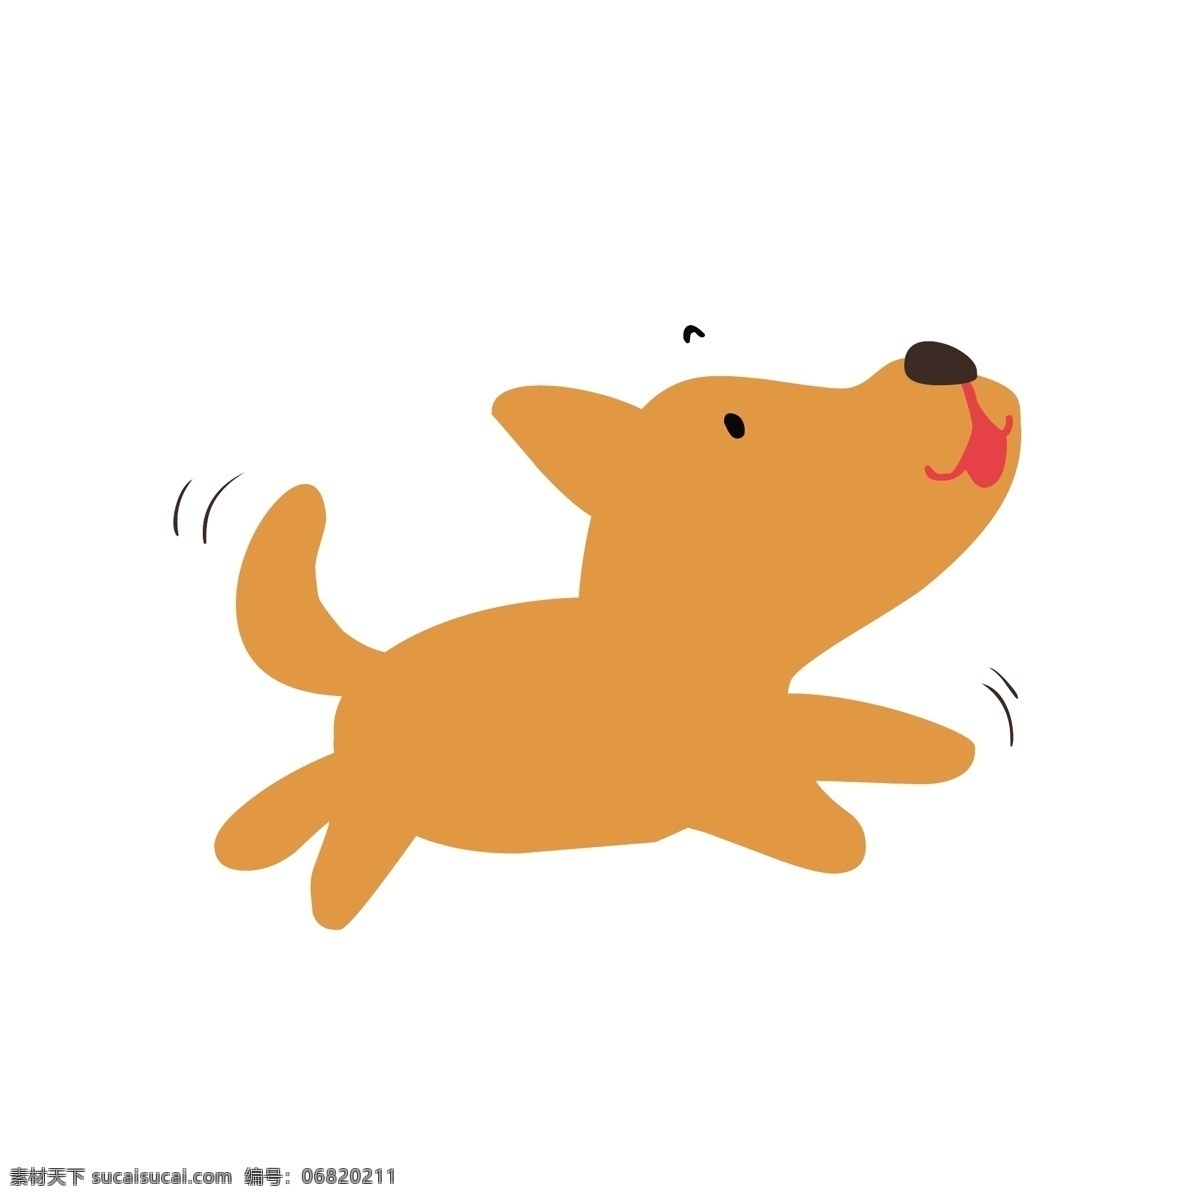 卡通 可爱 小狗 矢量 卡通小狗 可爱的 可爱的小狗 橙色 橙色小狗 奔跑 奔跑的小狗